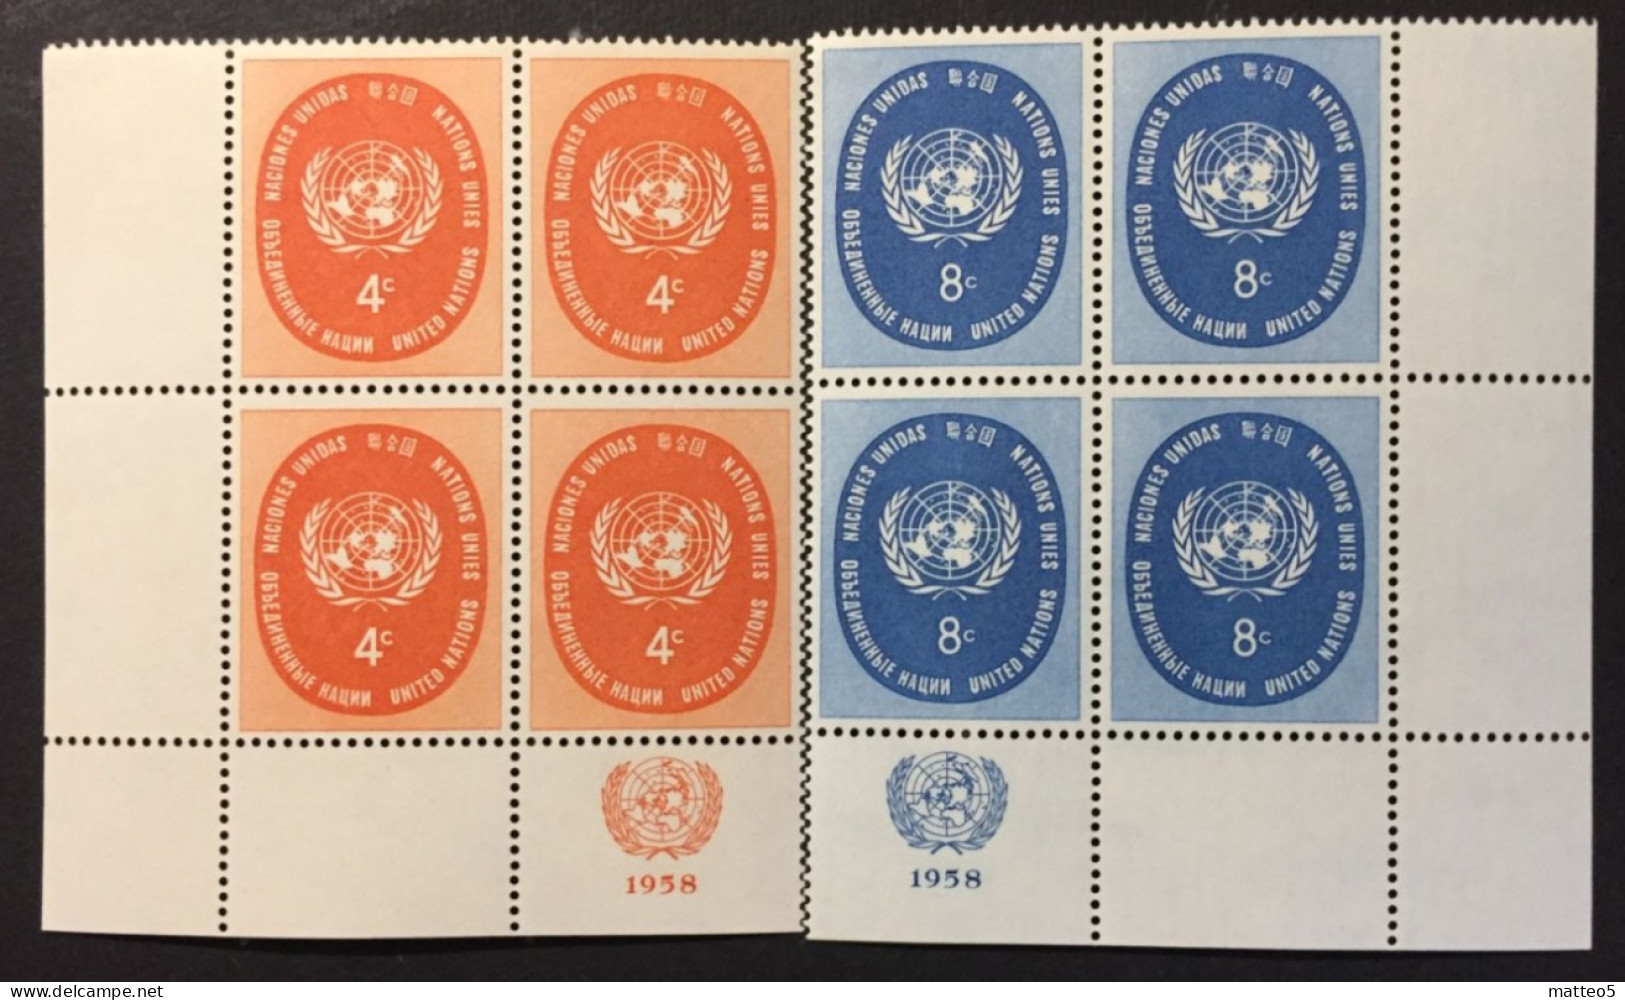 1958 - United Nations UNO UN ONU - UN Symbol - 2 X4 Stamps Unused - Nuevos